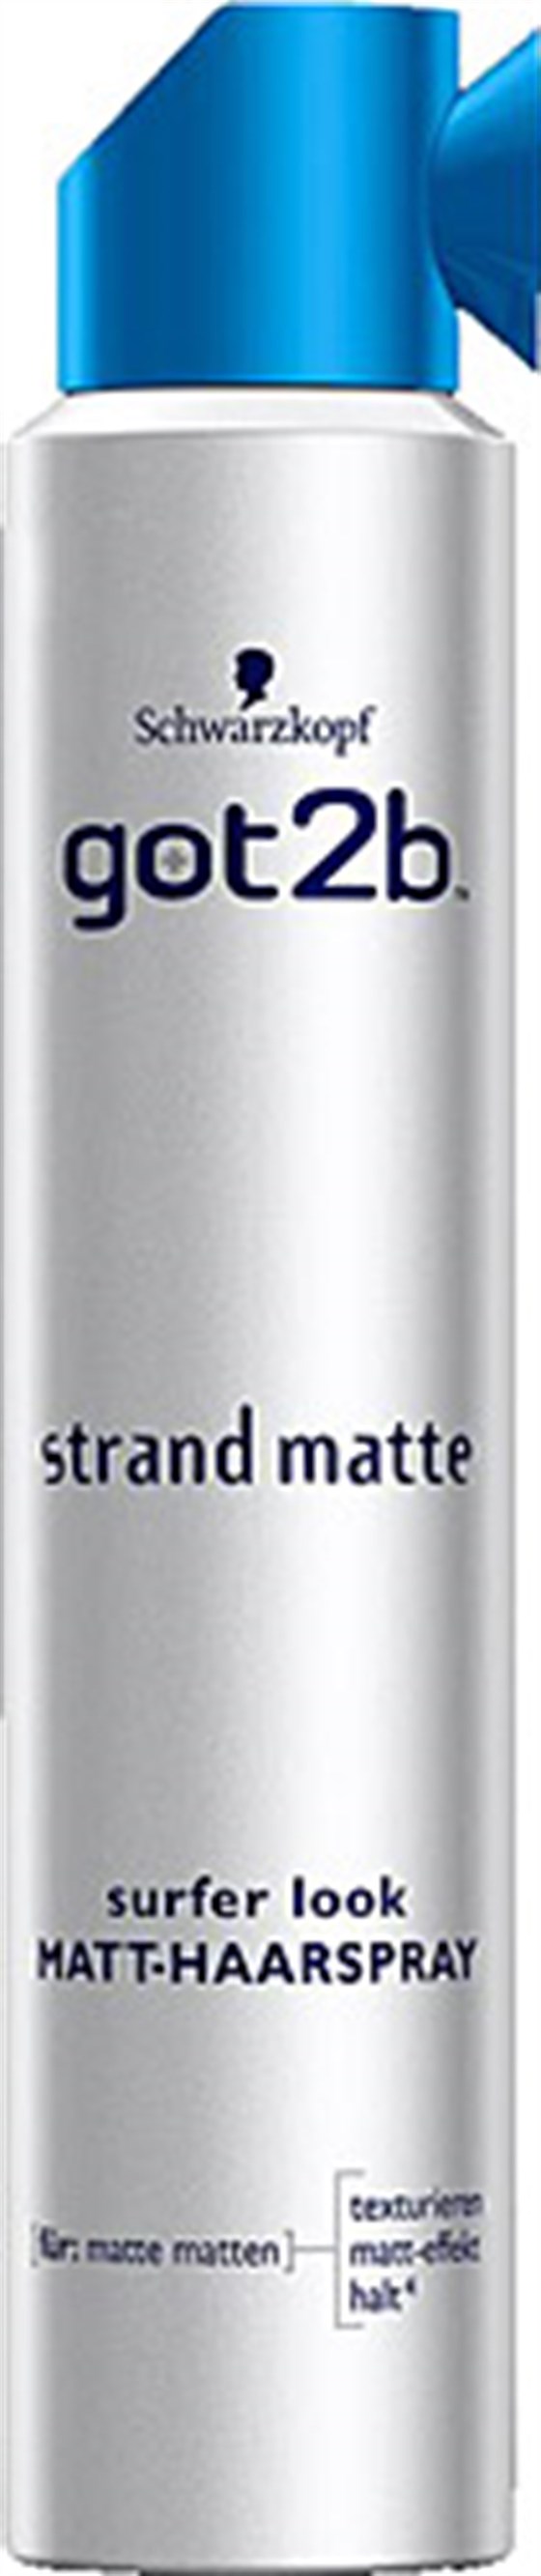 Saç Bakım ÜrünleriSchwarzkopfGot2b Strand Matte 200 ml Saç Spreyi